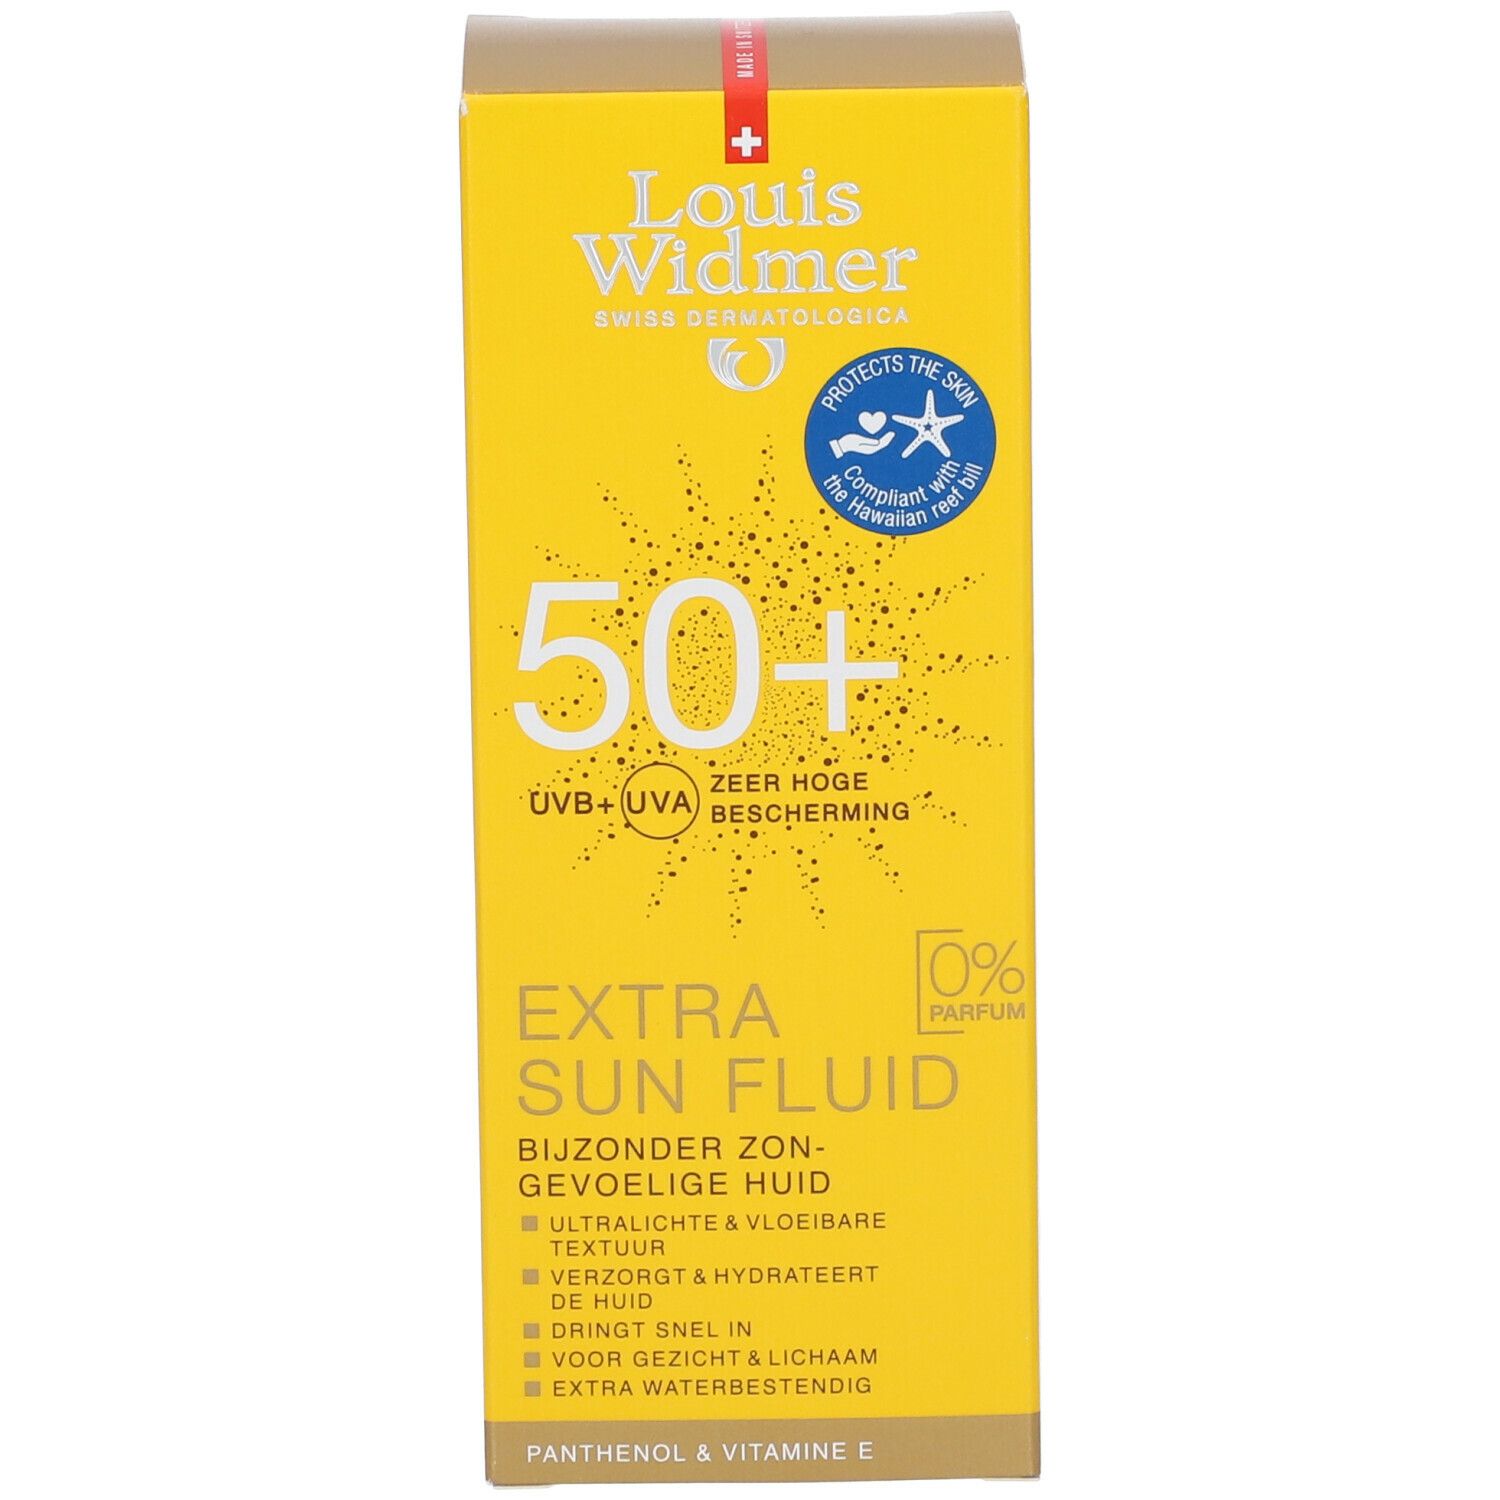 Louis Widmer Extra Sun Fluid SPF50+ sans parfum